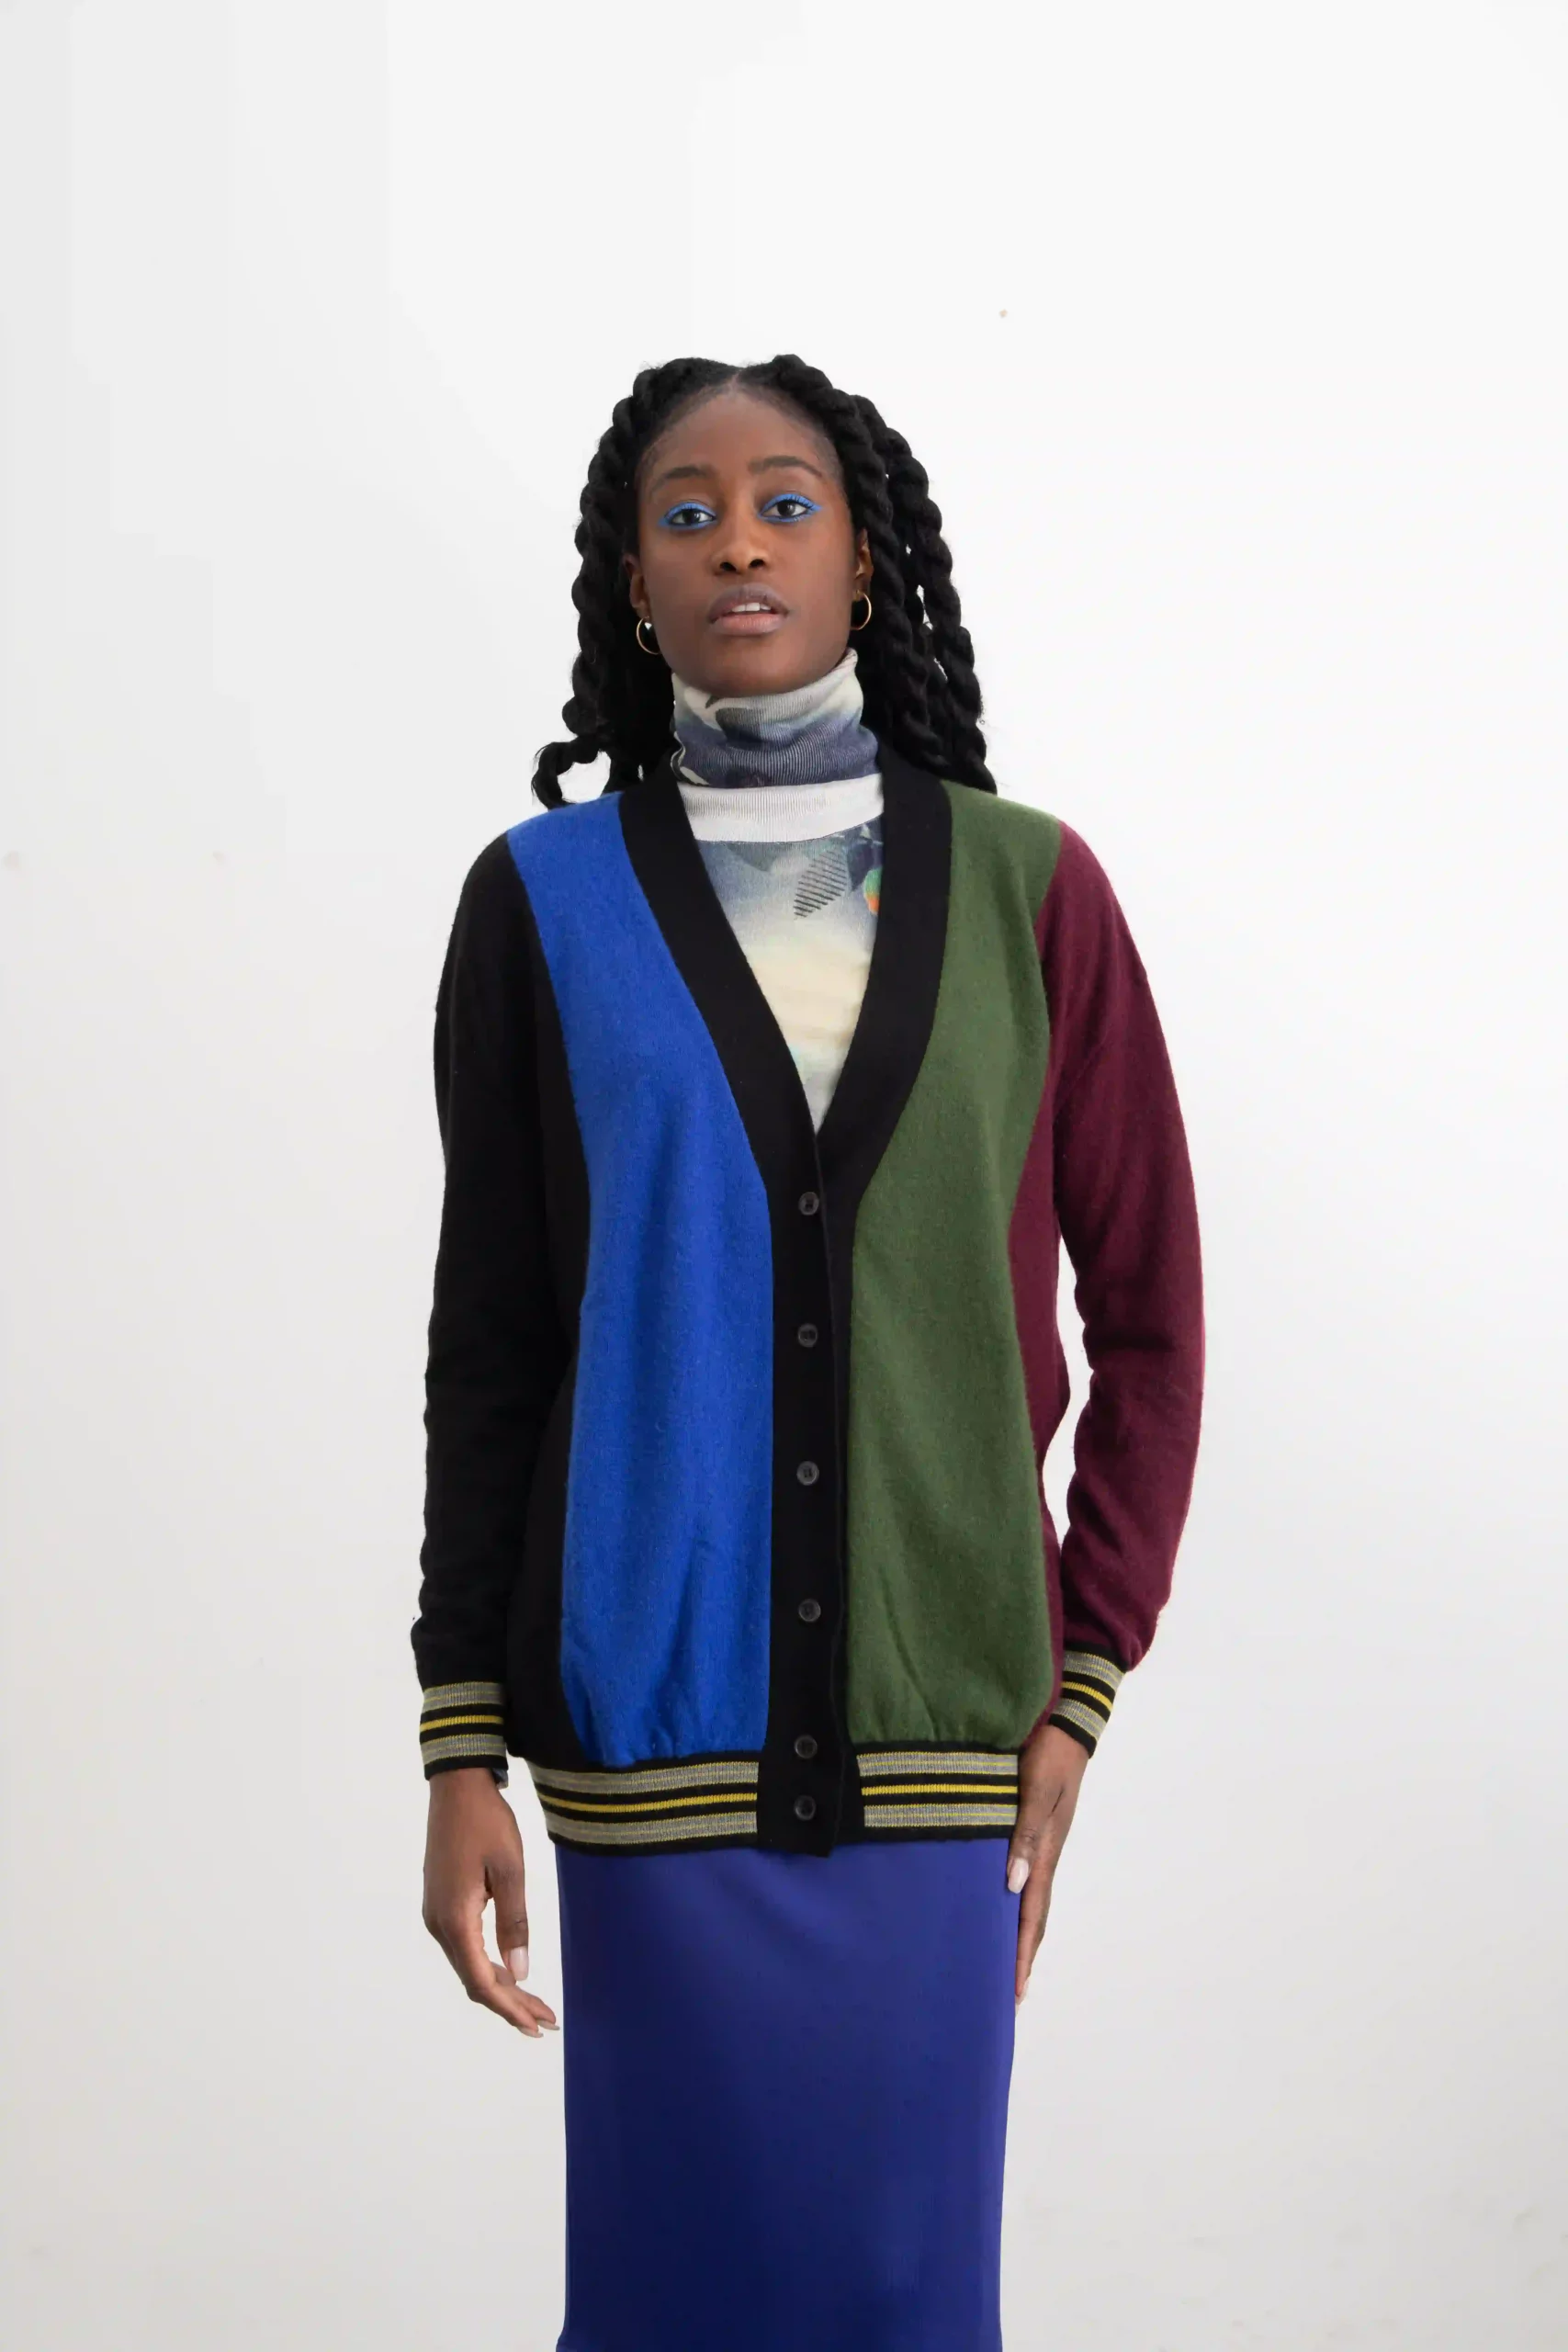 Cardigan Marni multicolore, a bande, nera, blu, verde, bordeaux. In 75% cachemire e 25% lana vergine, morbidissimo. Con polsini e fondo a righe gialle grigie.